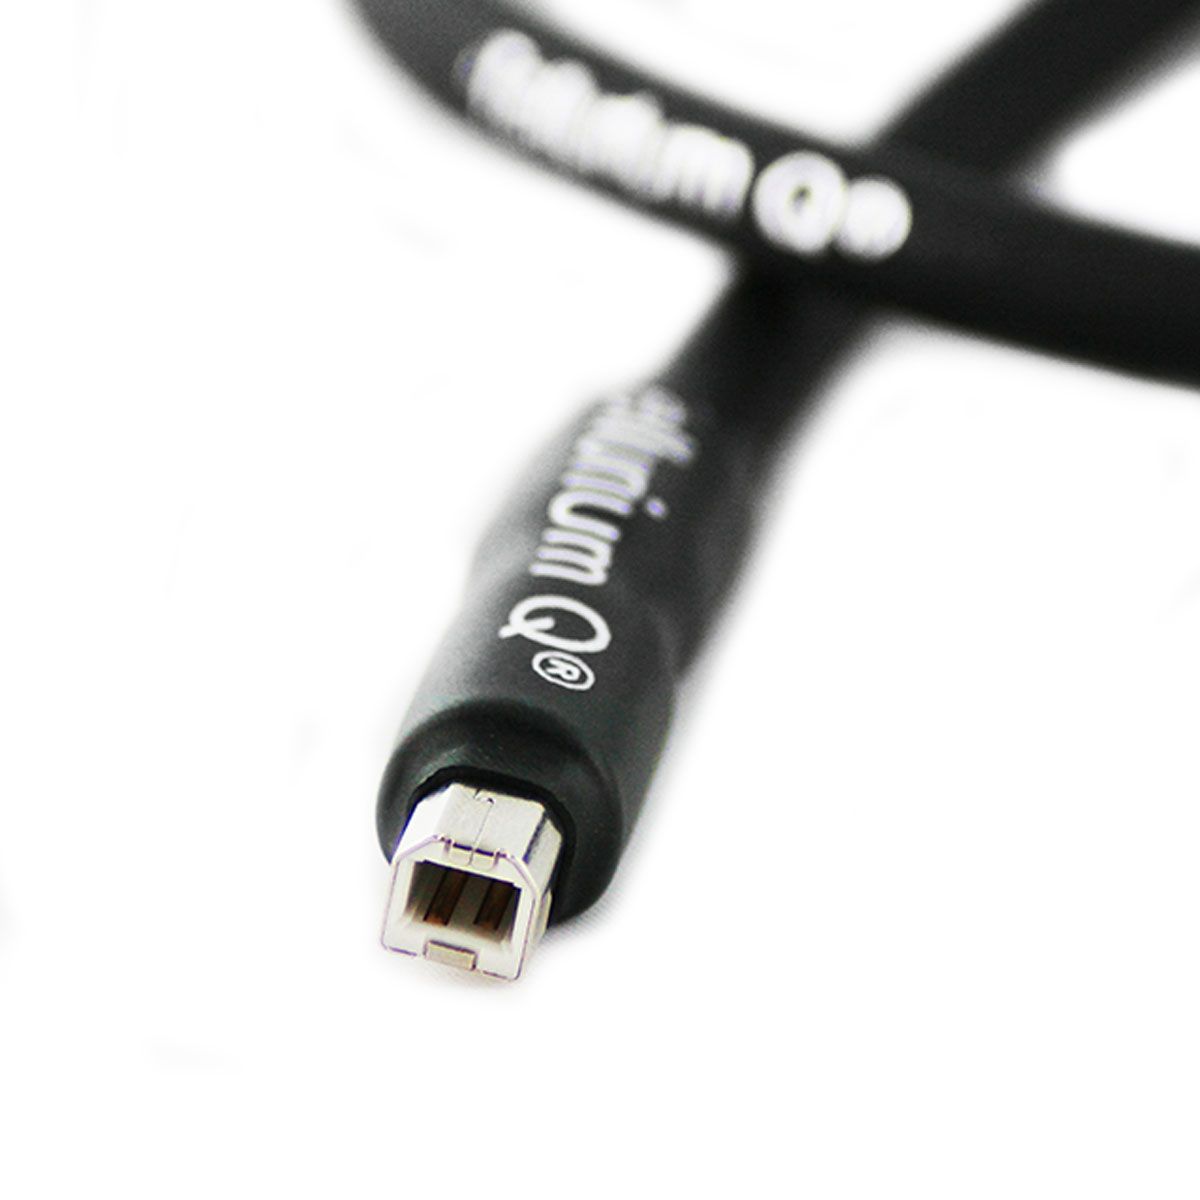 Tellurium Q Black USB Type A to Type B Cable